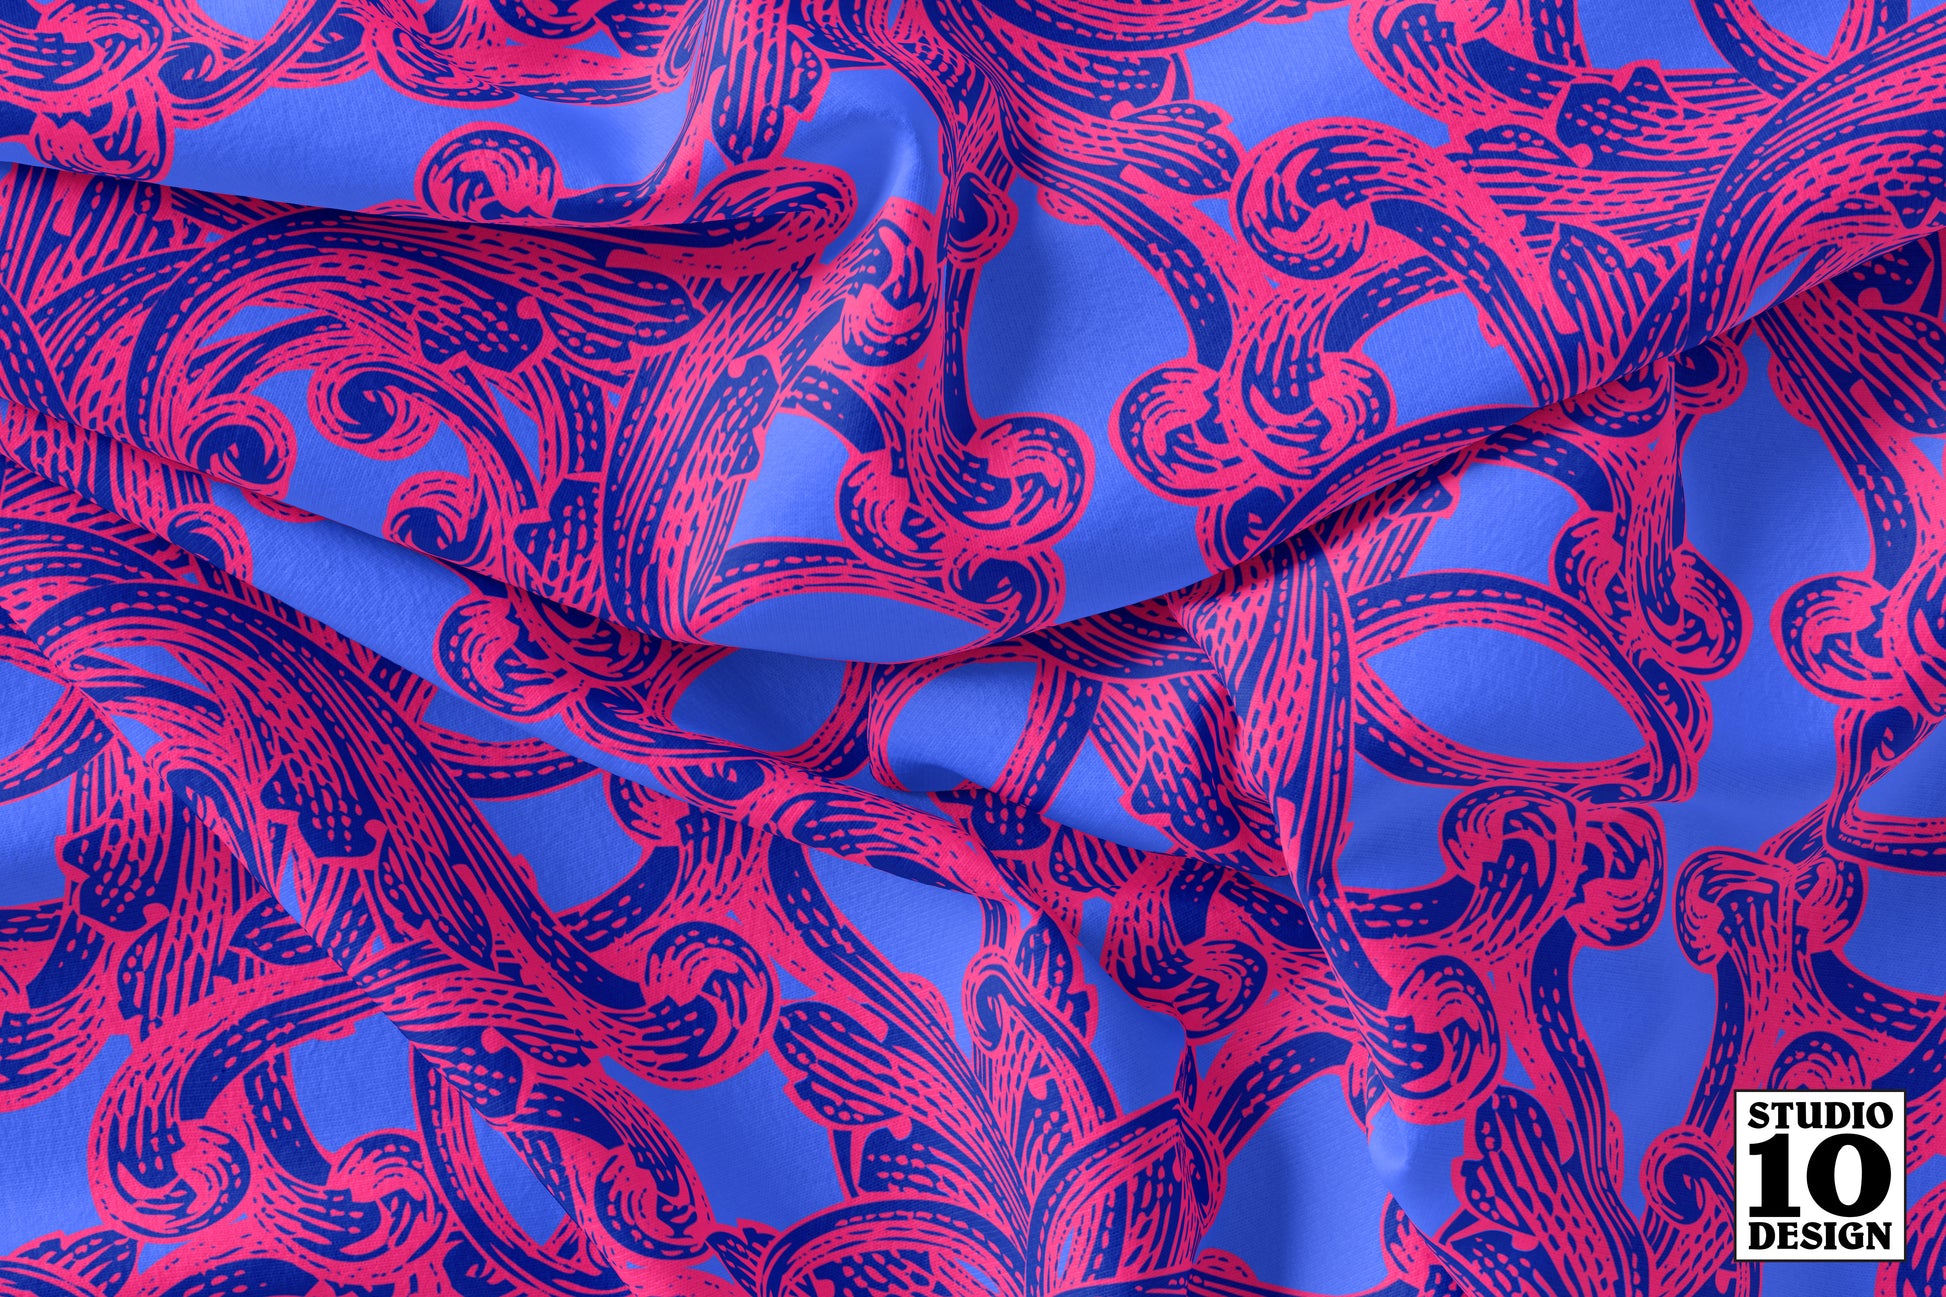 Baroque: Verona Printed Fabric by Studio Ten Design